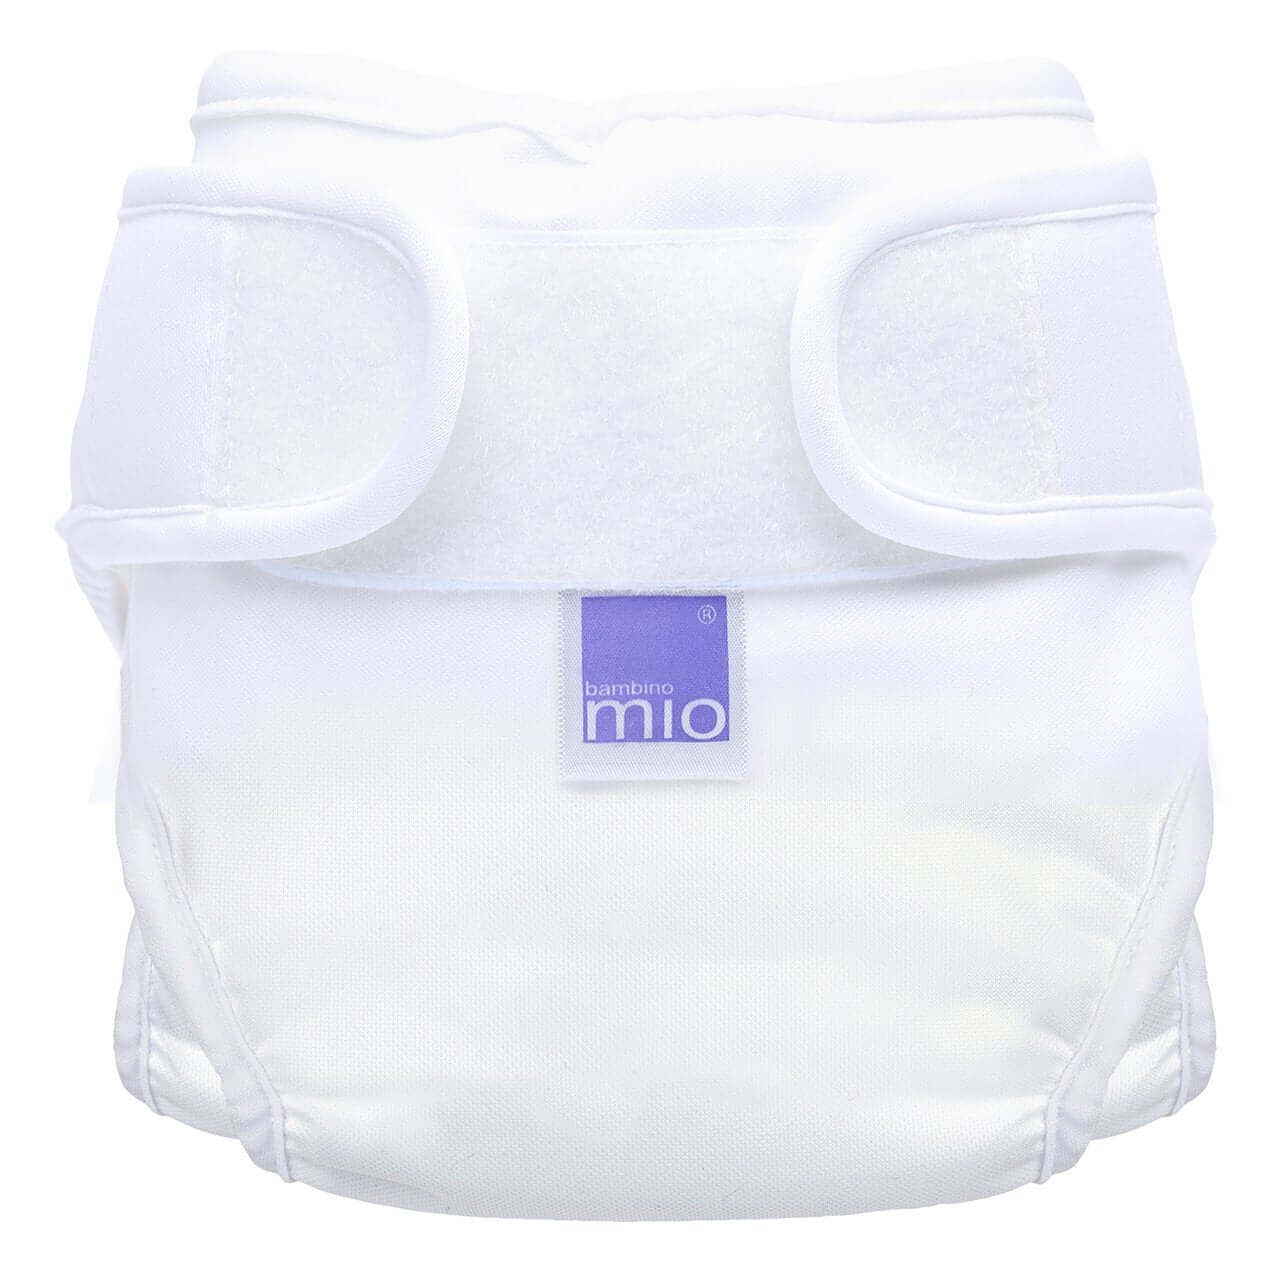 Bambino Mio Mioduo Reusable Nappy Cover Size: Size 2 Colour: White reusable nappies nappy covers Earthlets